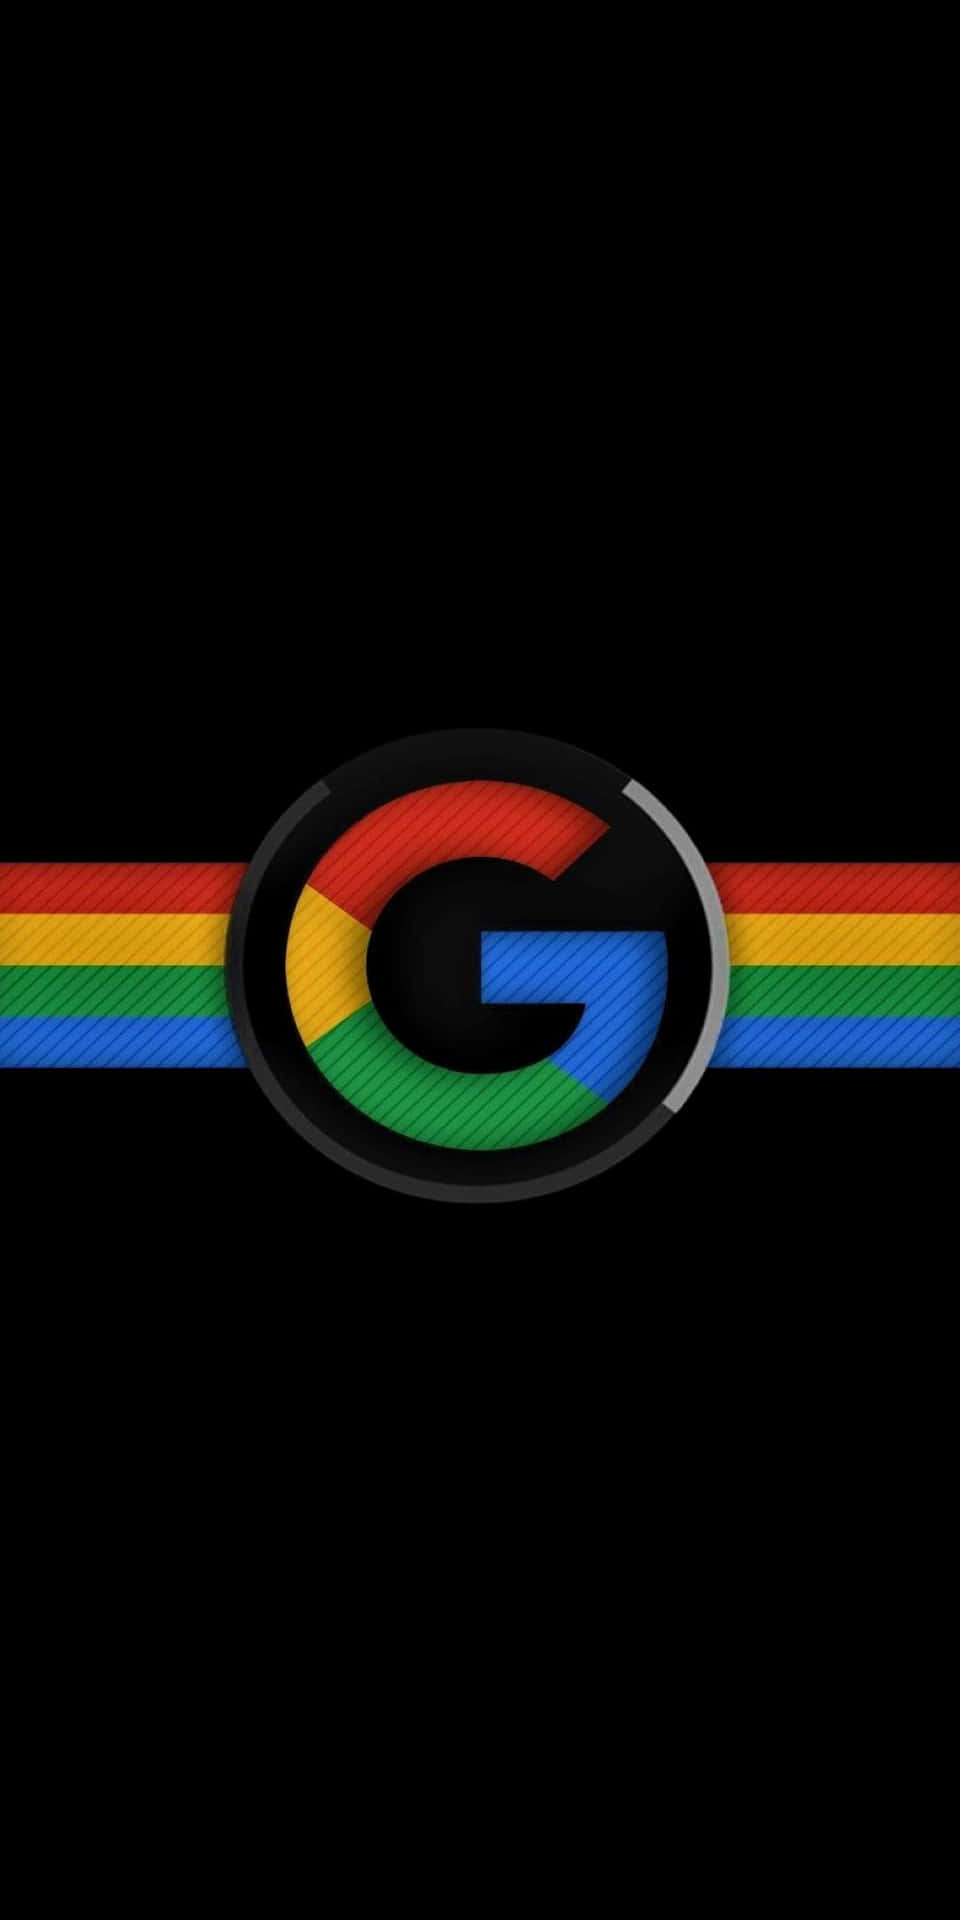 Logo Google Pixel 3 Amoled Background